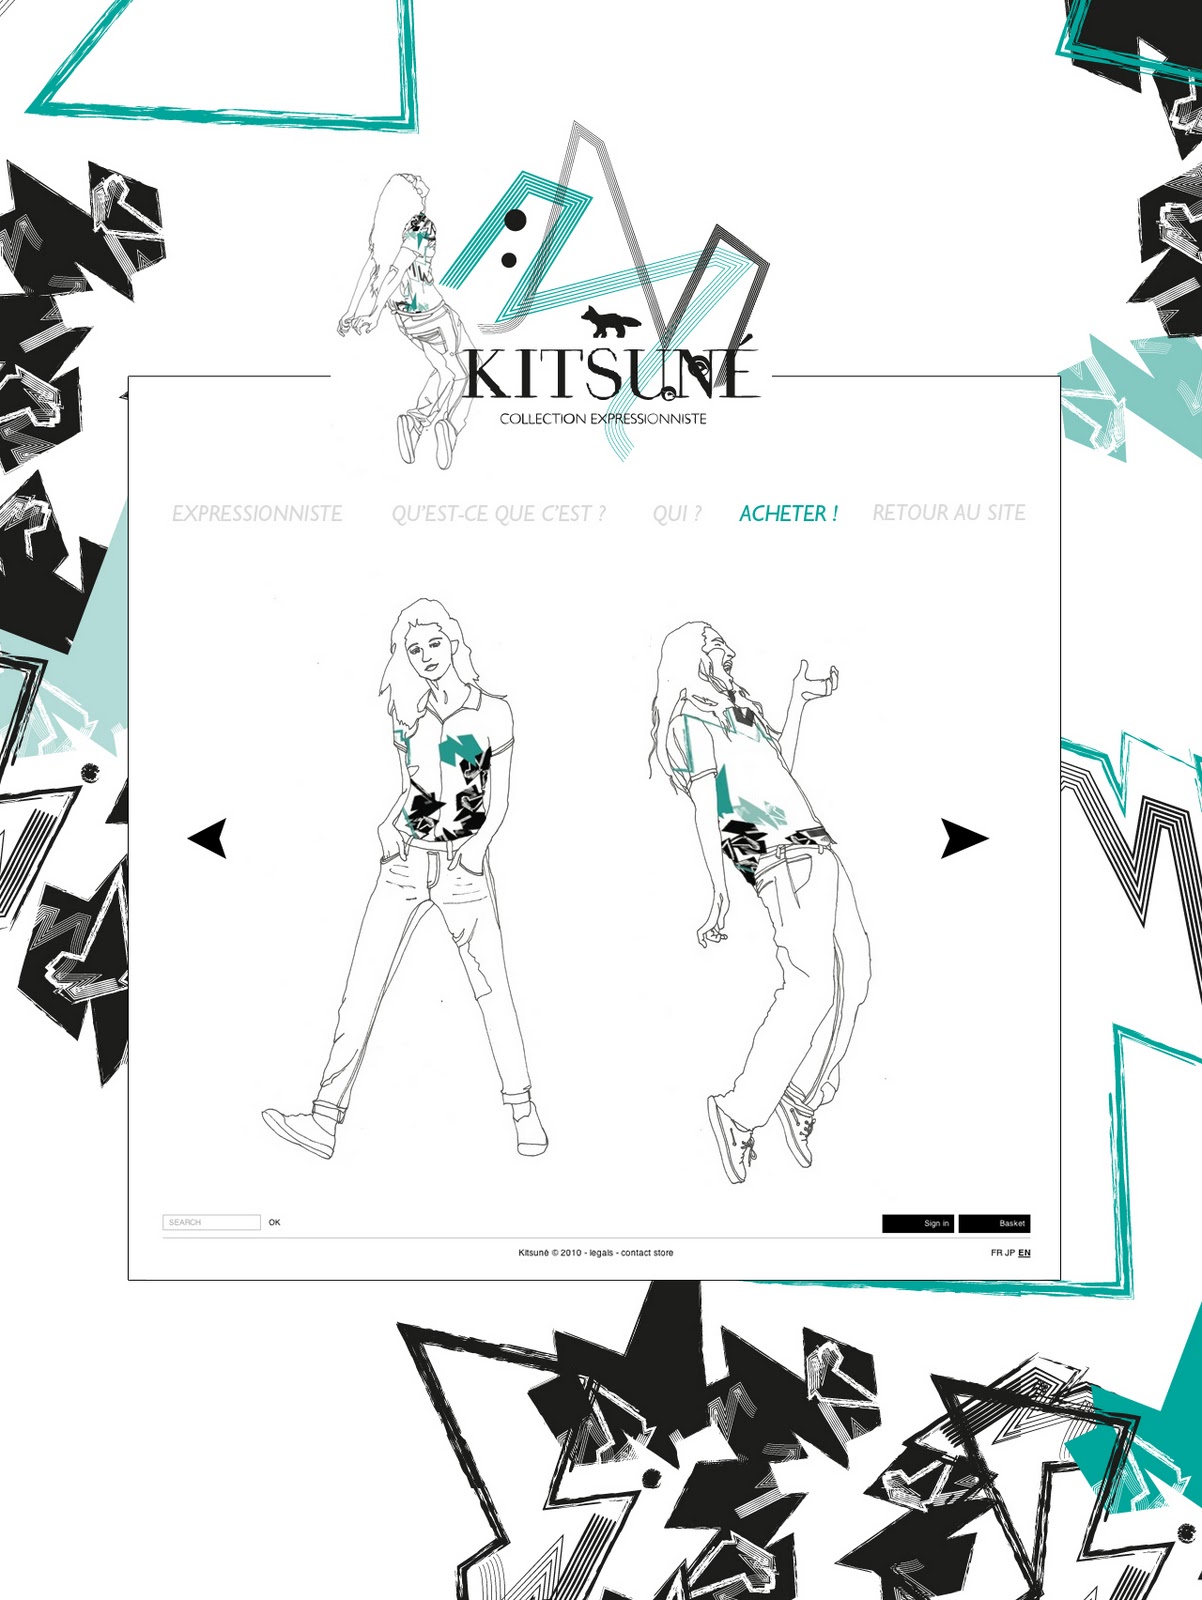 Mini site Kitsuné : Collection expressionniste